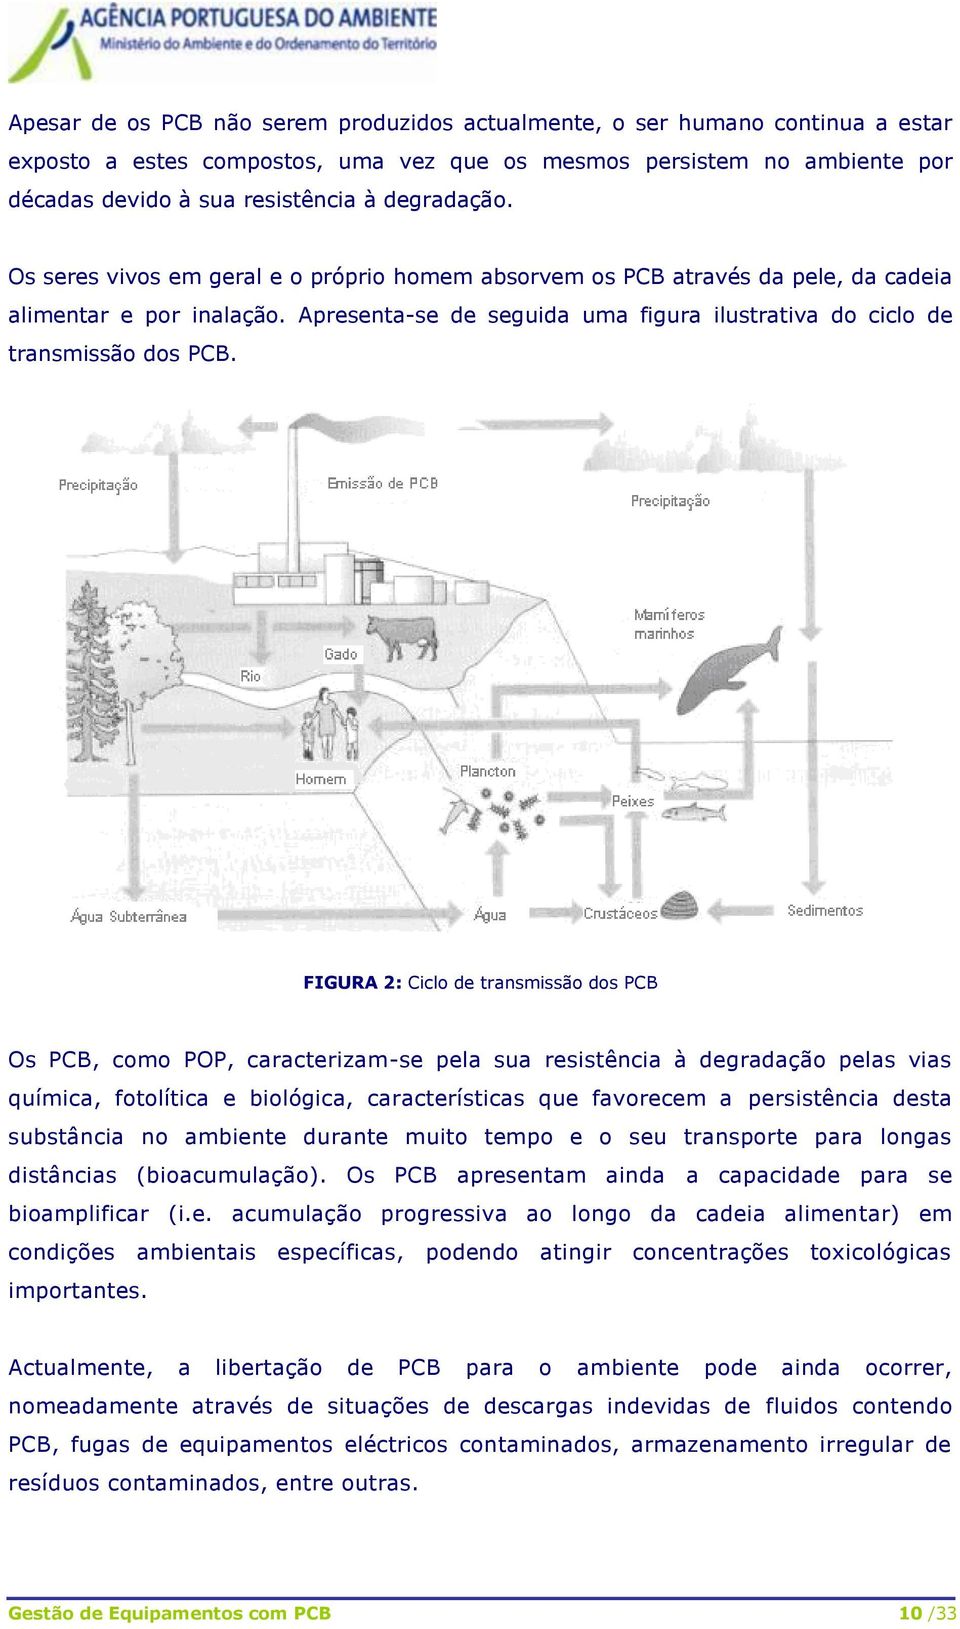 Apresenta-se de seguida uma figura ilustrativa do ciclo de transmissão dos PCB.